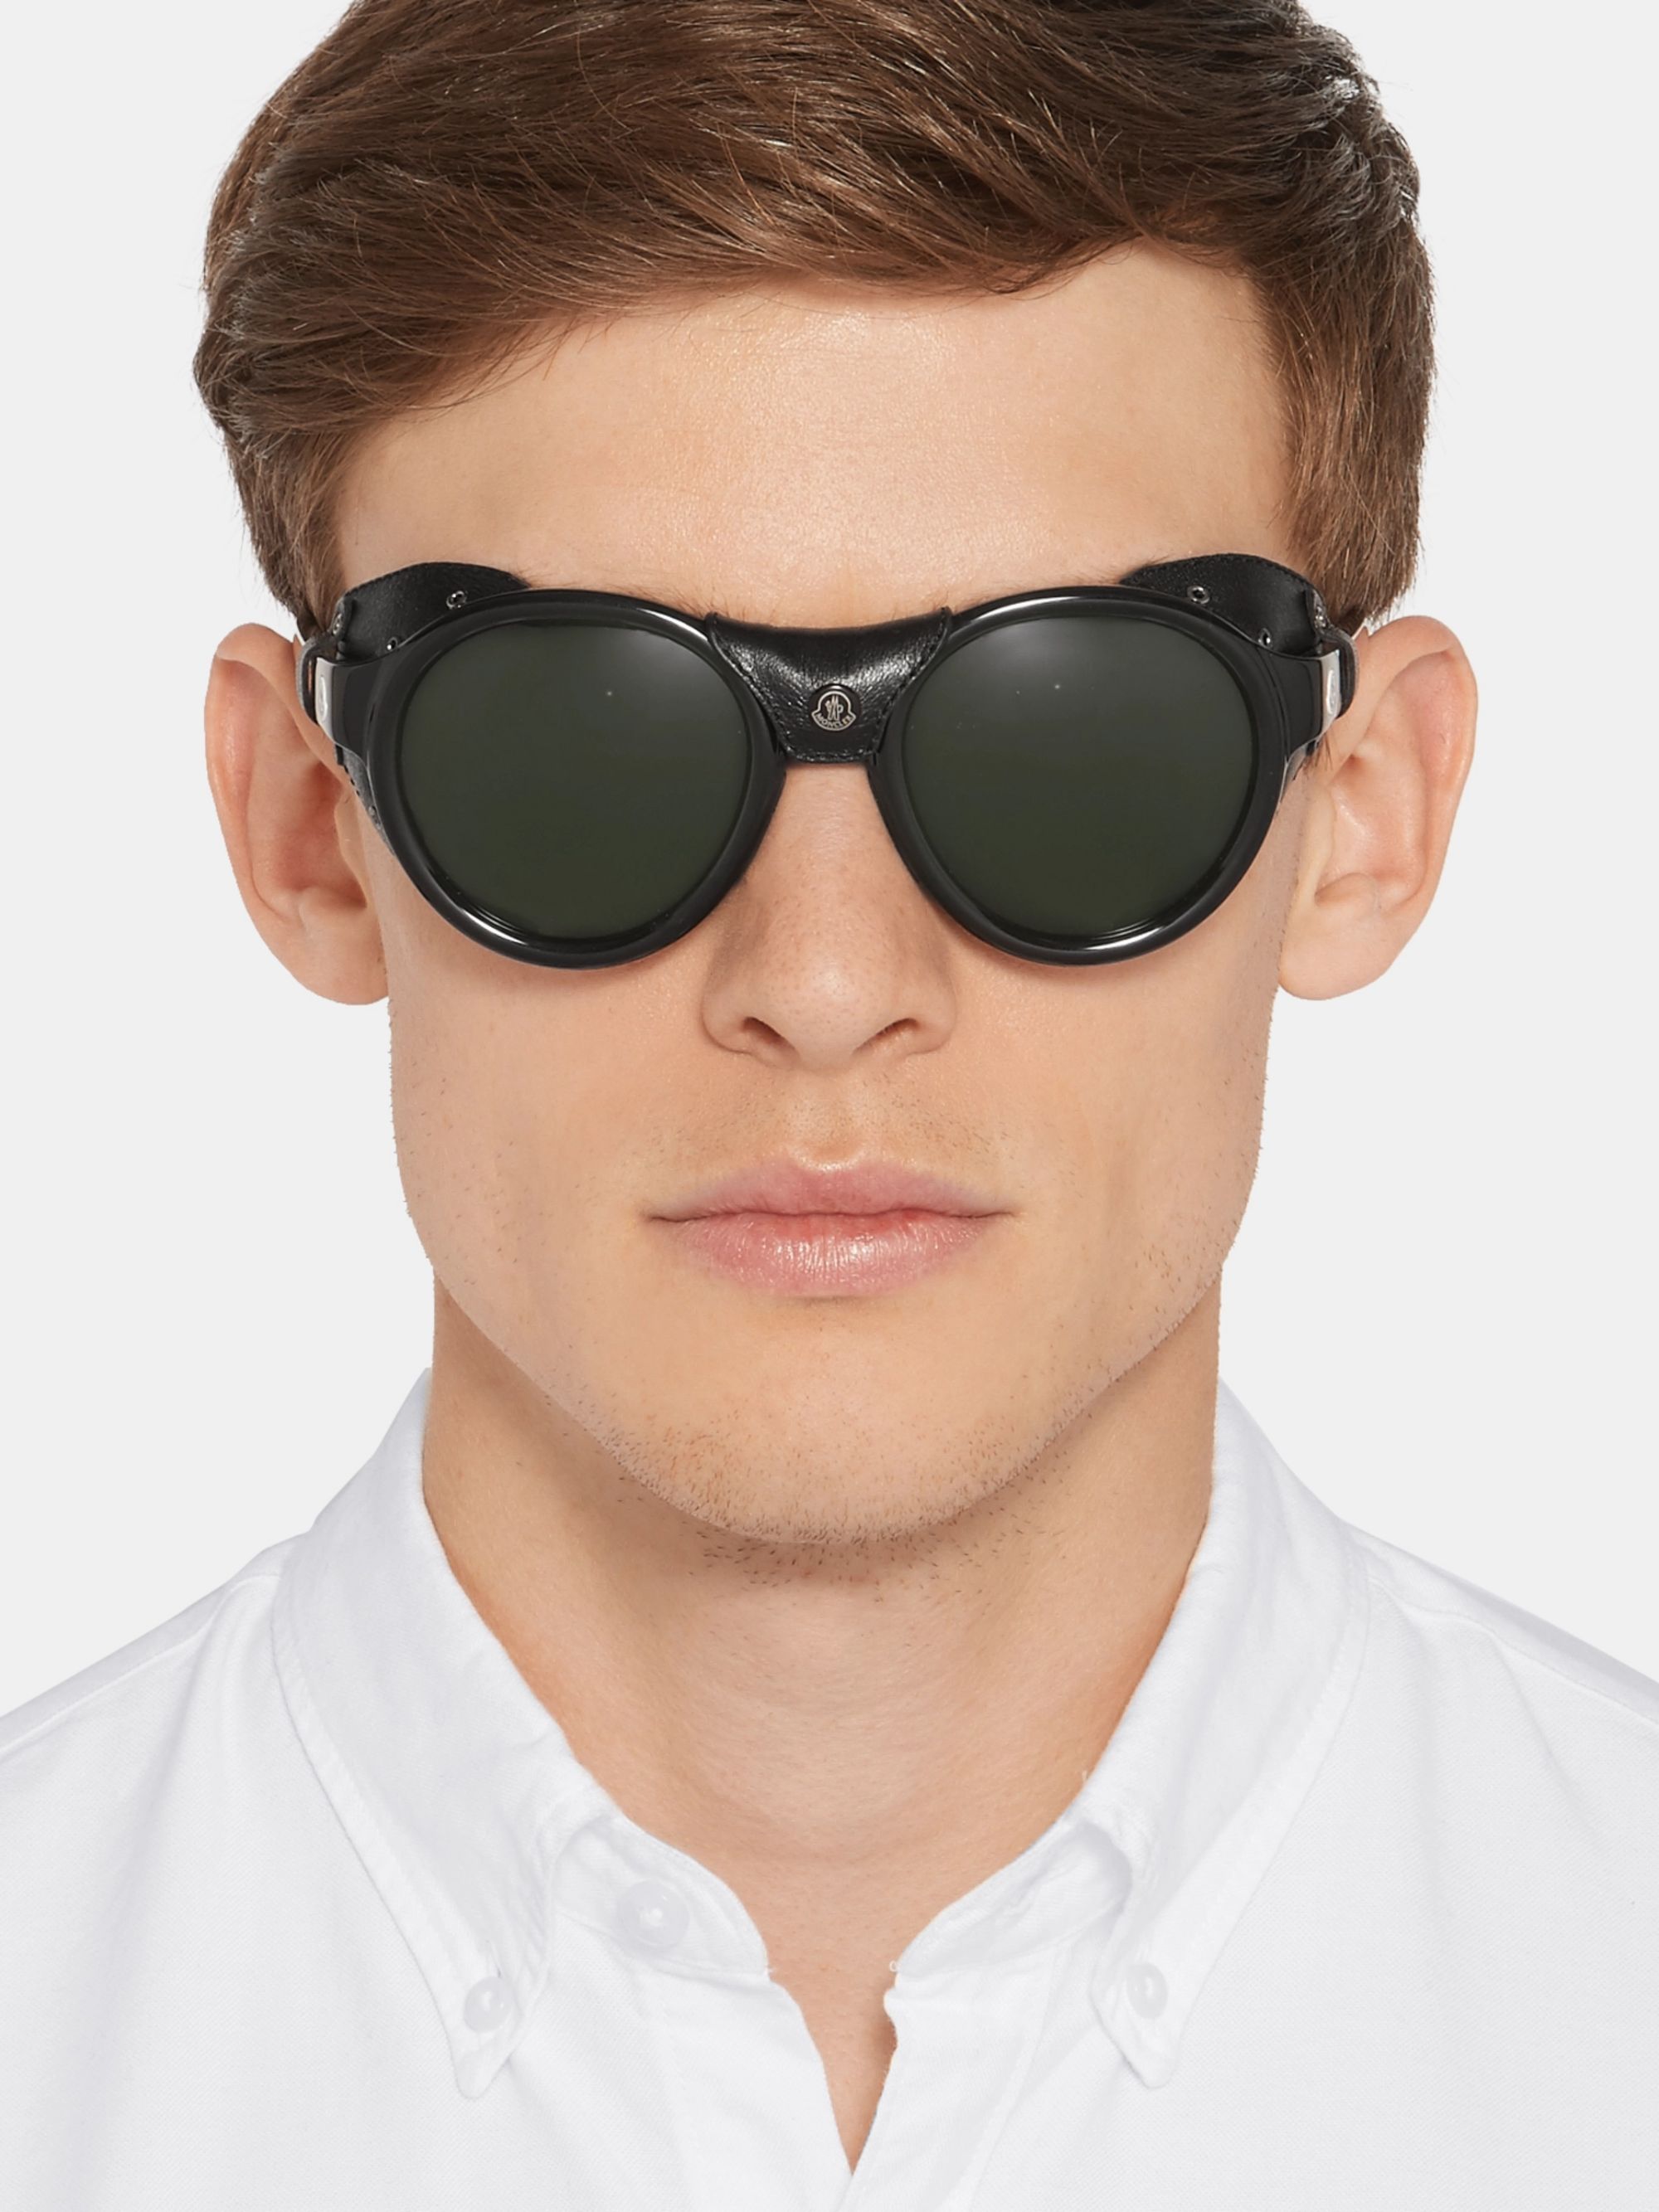 Очки на широкое лицо мужские. Очки солнцезащитные мужские. Солнечные очки для мужчин. Стильные мужские очки. Очки мужские солнцезащитные модные.